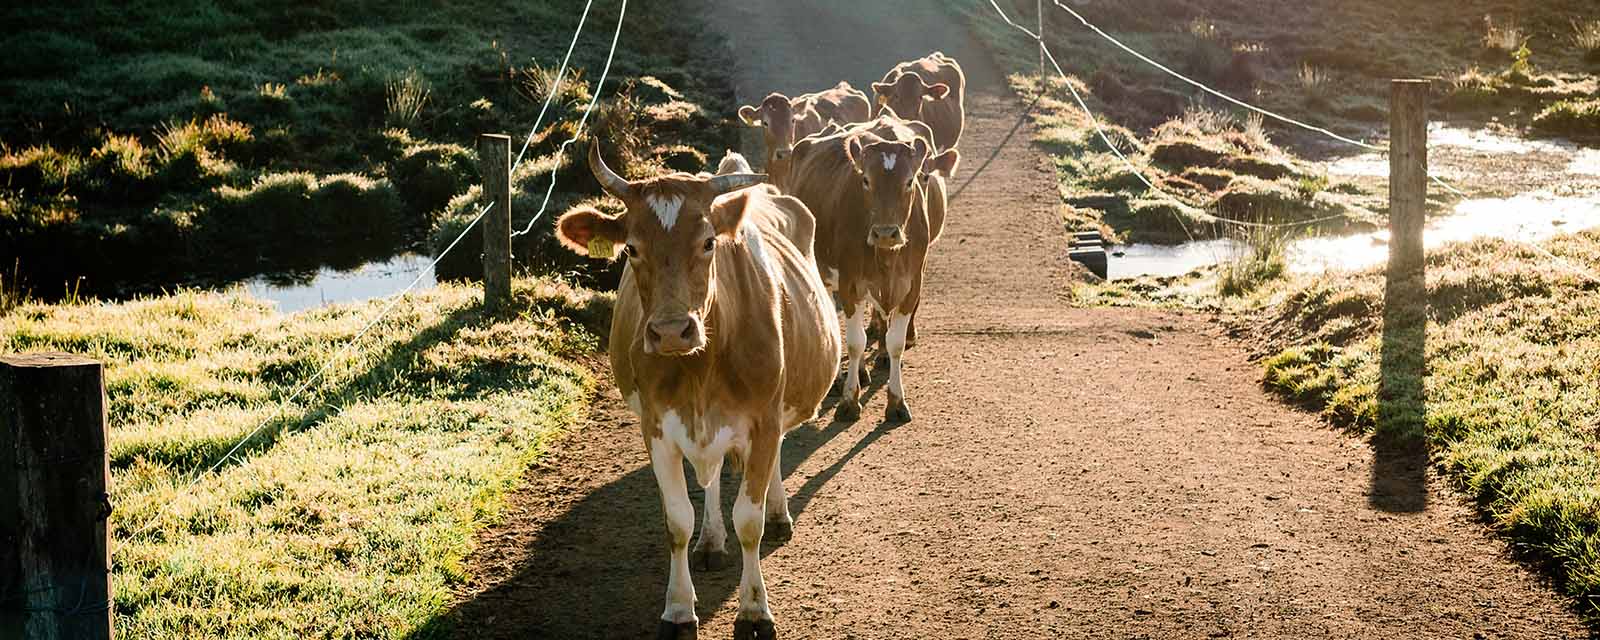 maleny-cows-crossing-hi-res